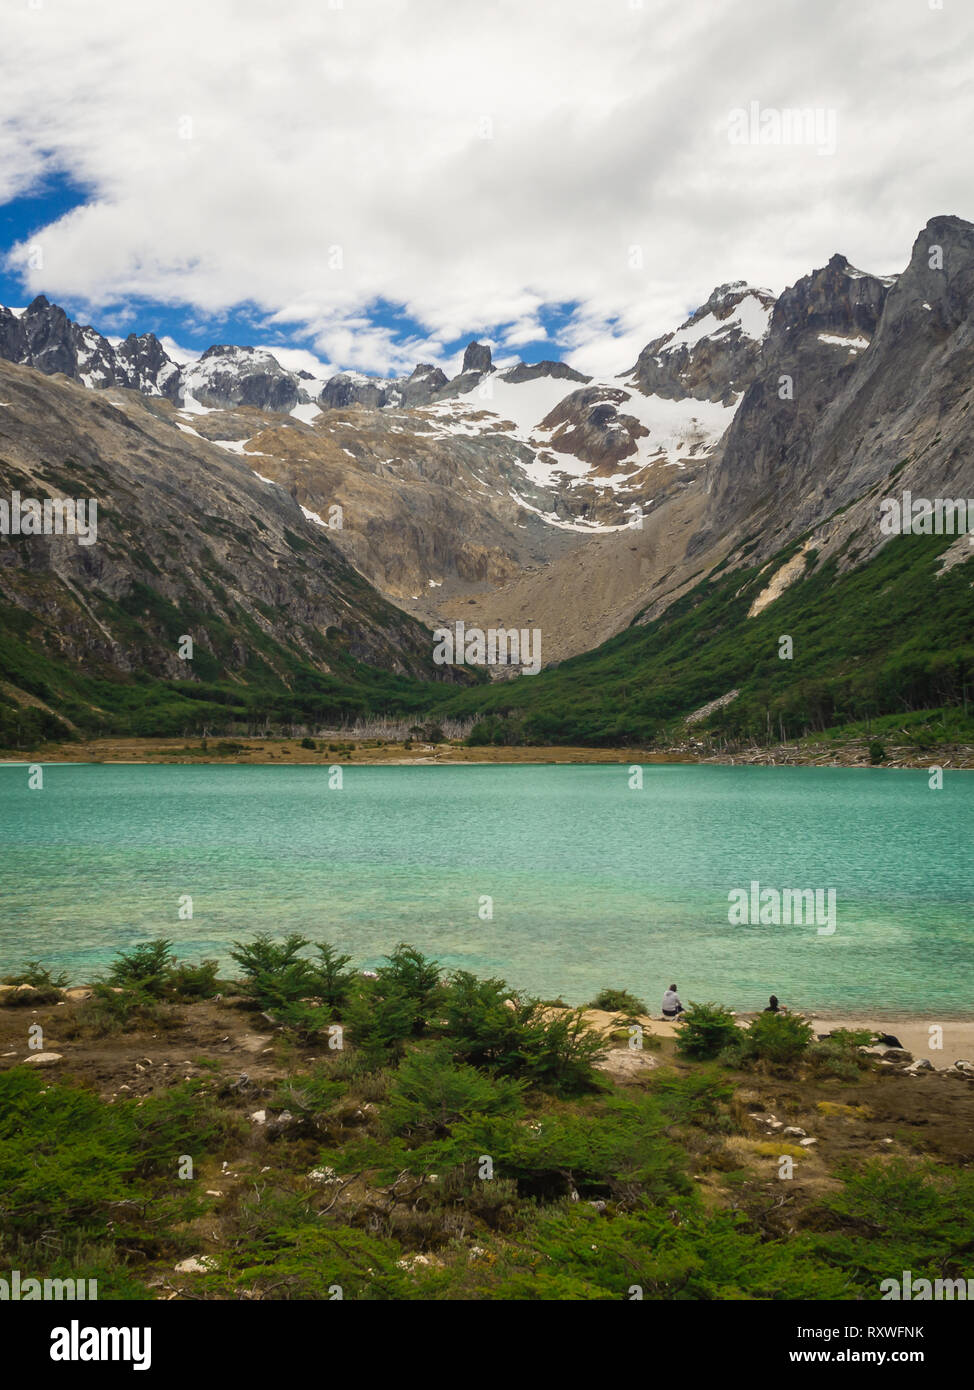 Laguna esmeralda la Patagonie argentine Ushuaia Tierra del Fuego, vue panoramique Banque D'Images